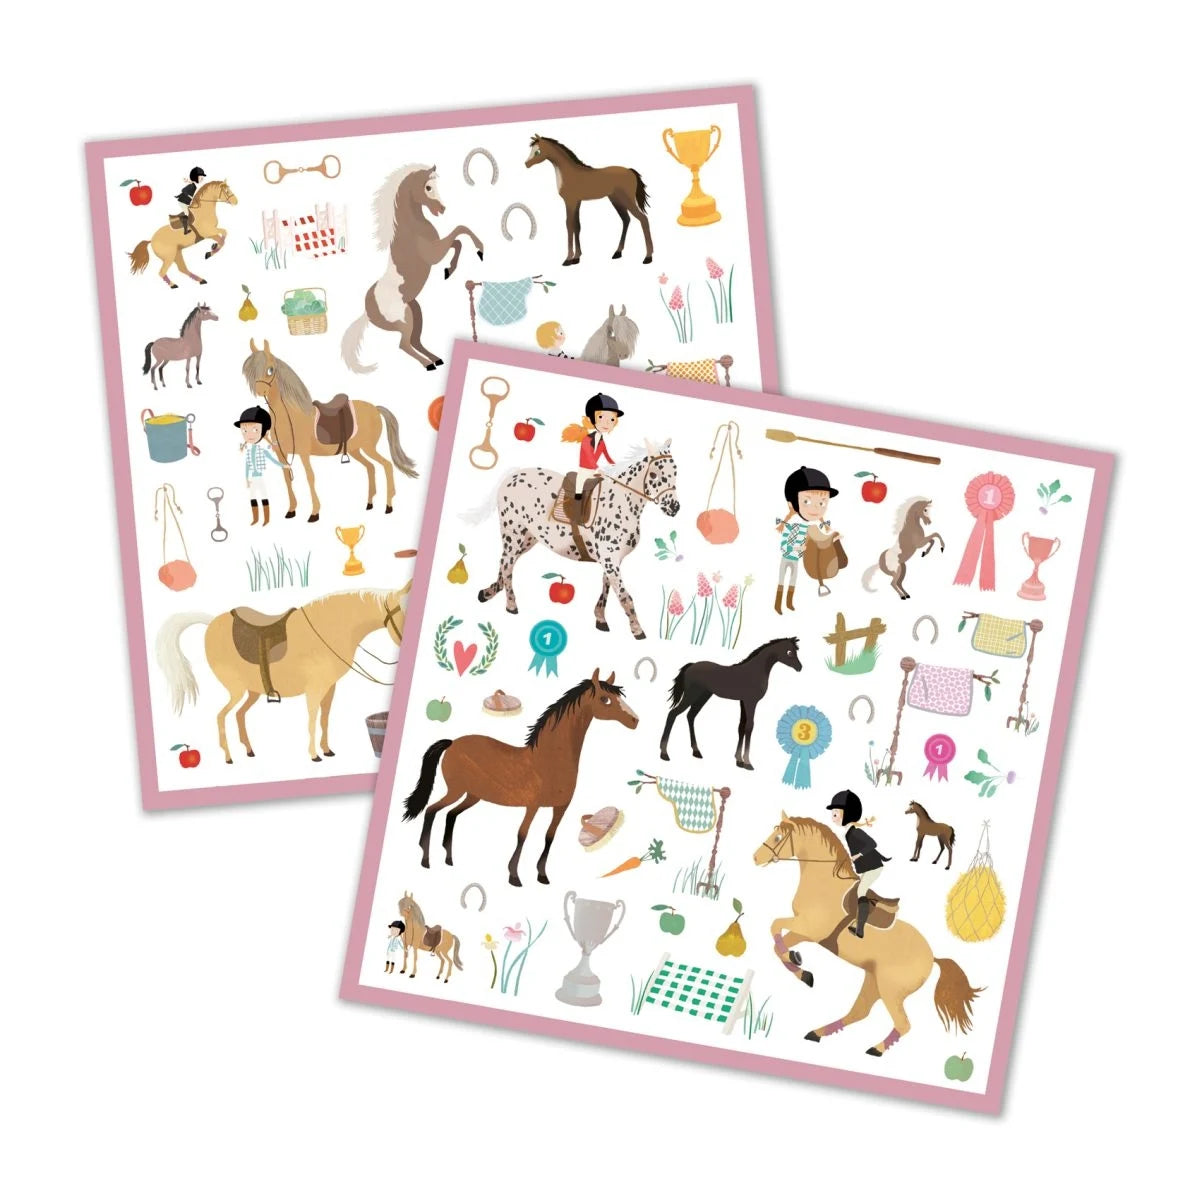 Pferde Sticker - 160 Sticker